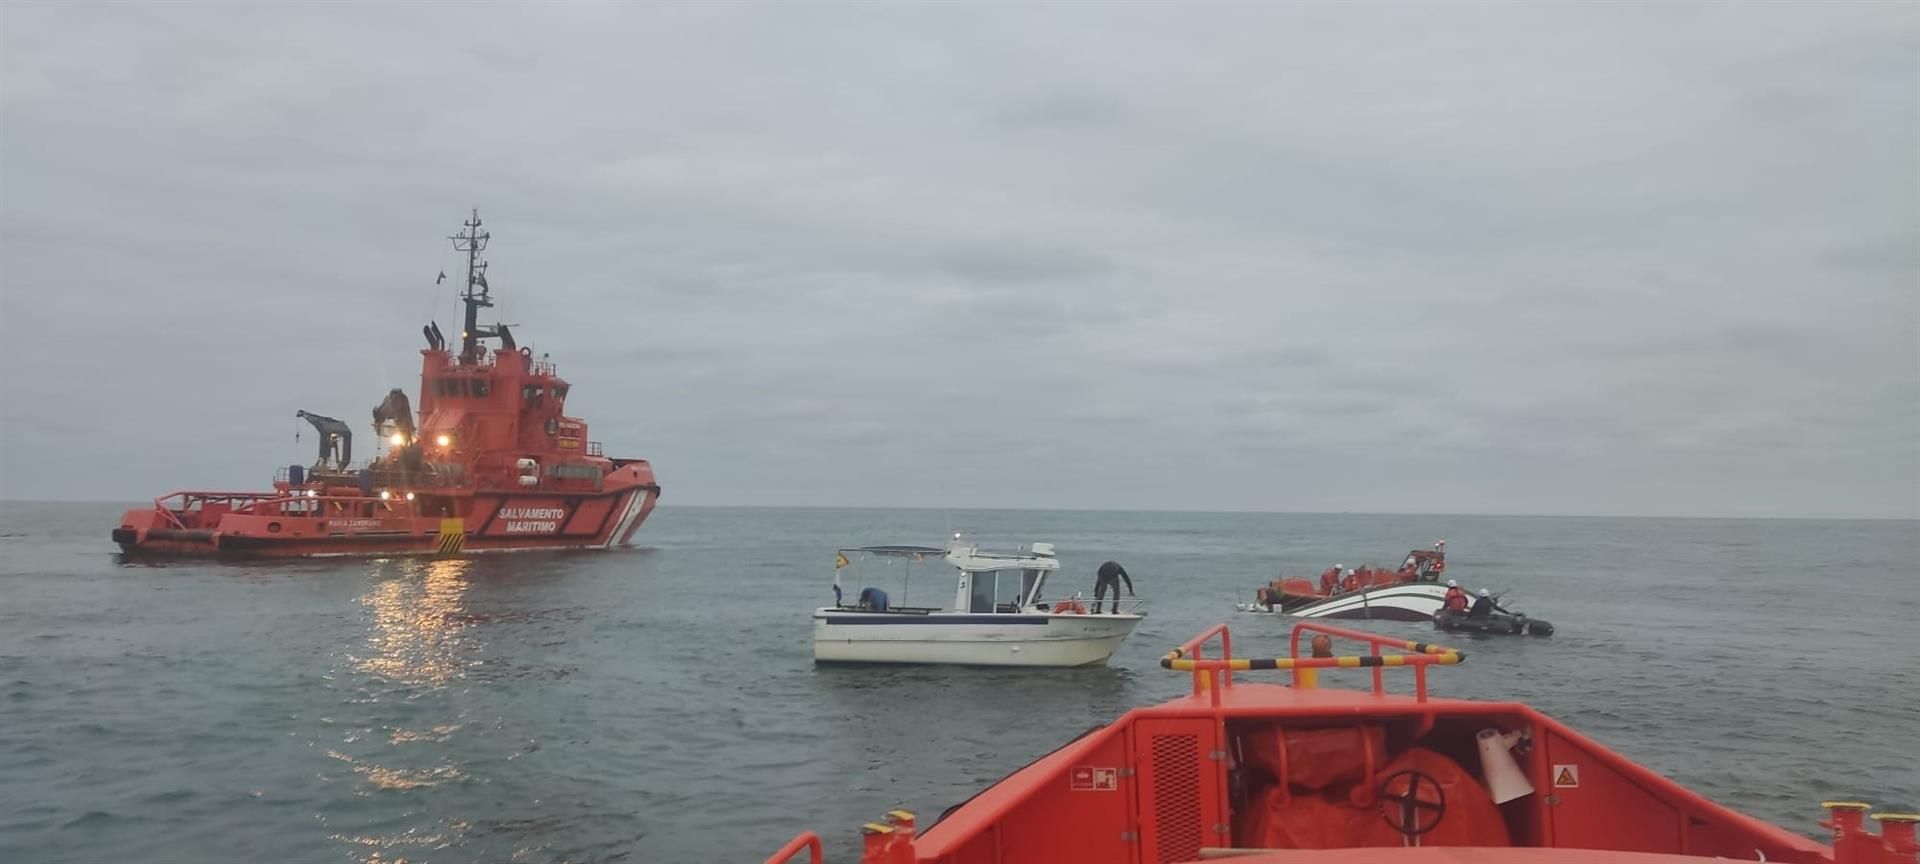 Salvamento Marítimo y los pesqueros accidentados en la costa de Cádiz.